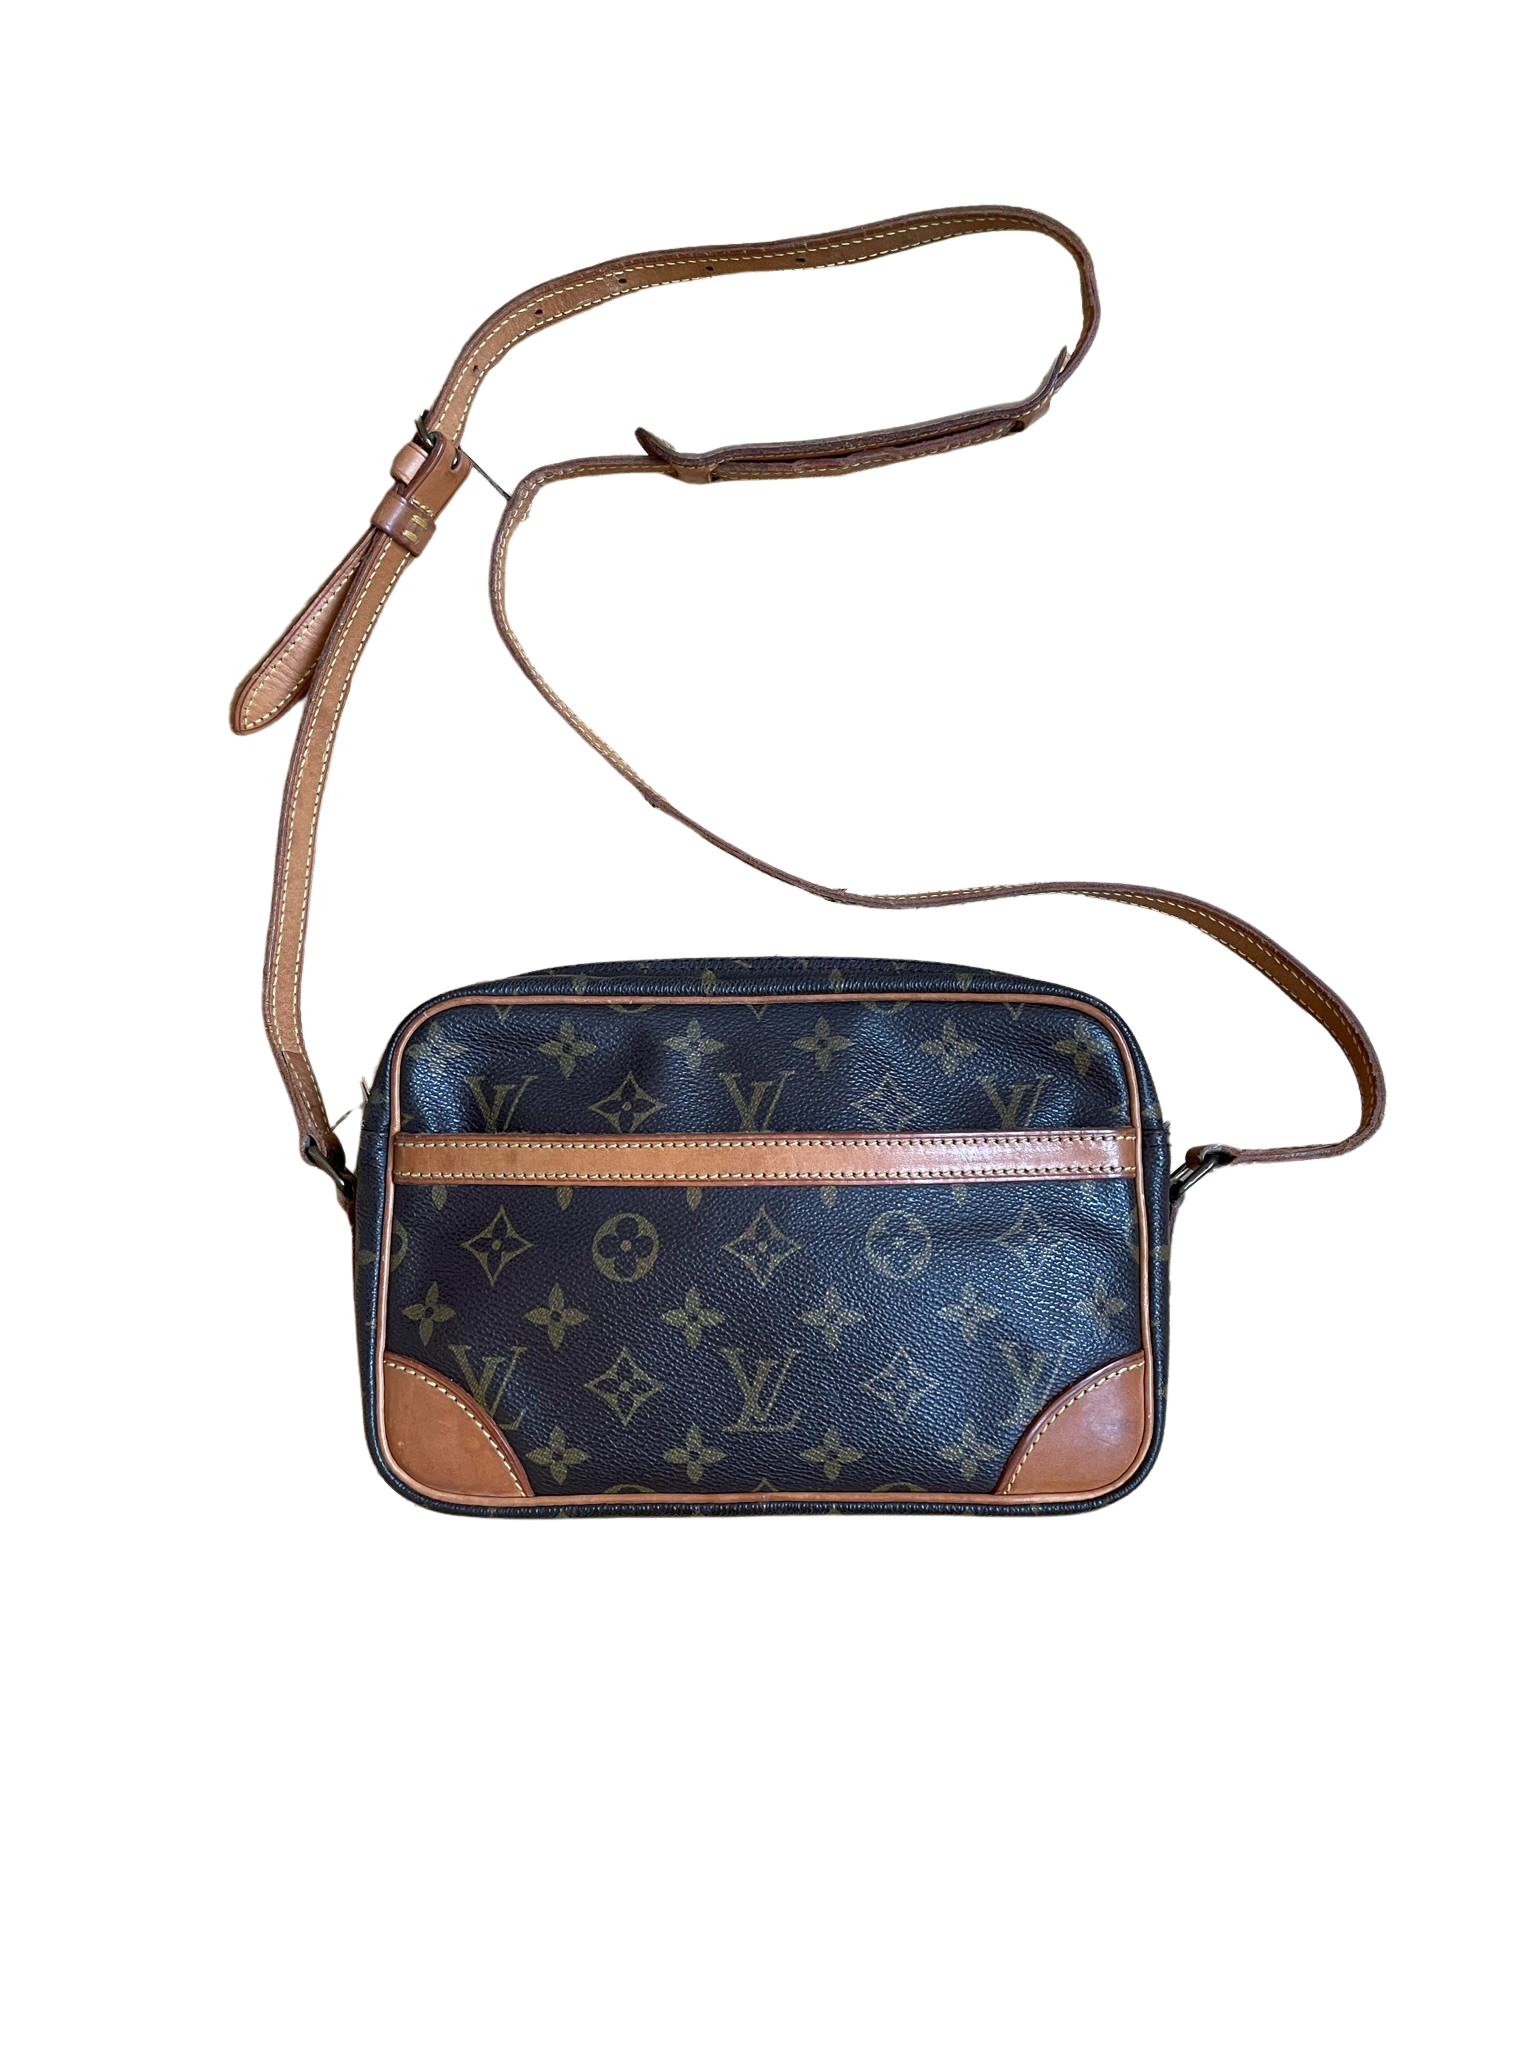 Louis Vuitton Trocadero Crossbody Bag in Monogram Canvas